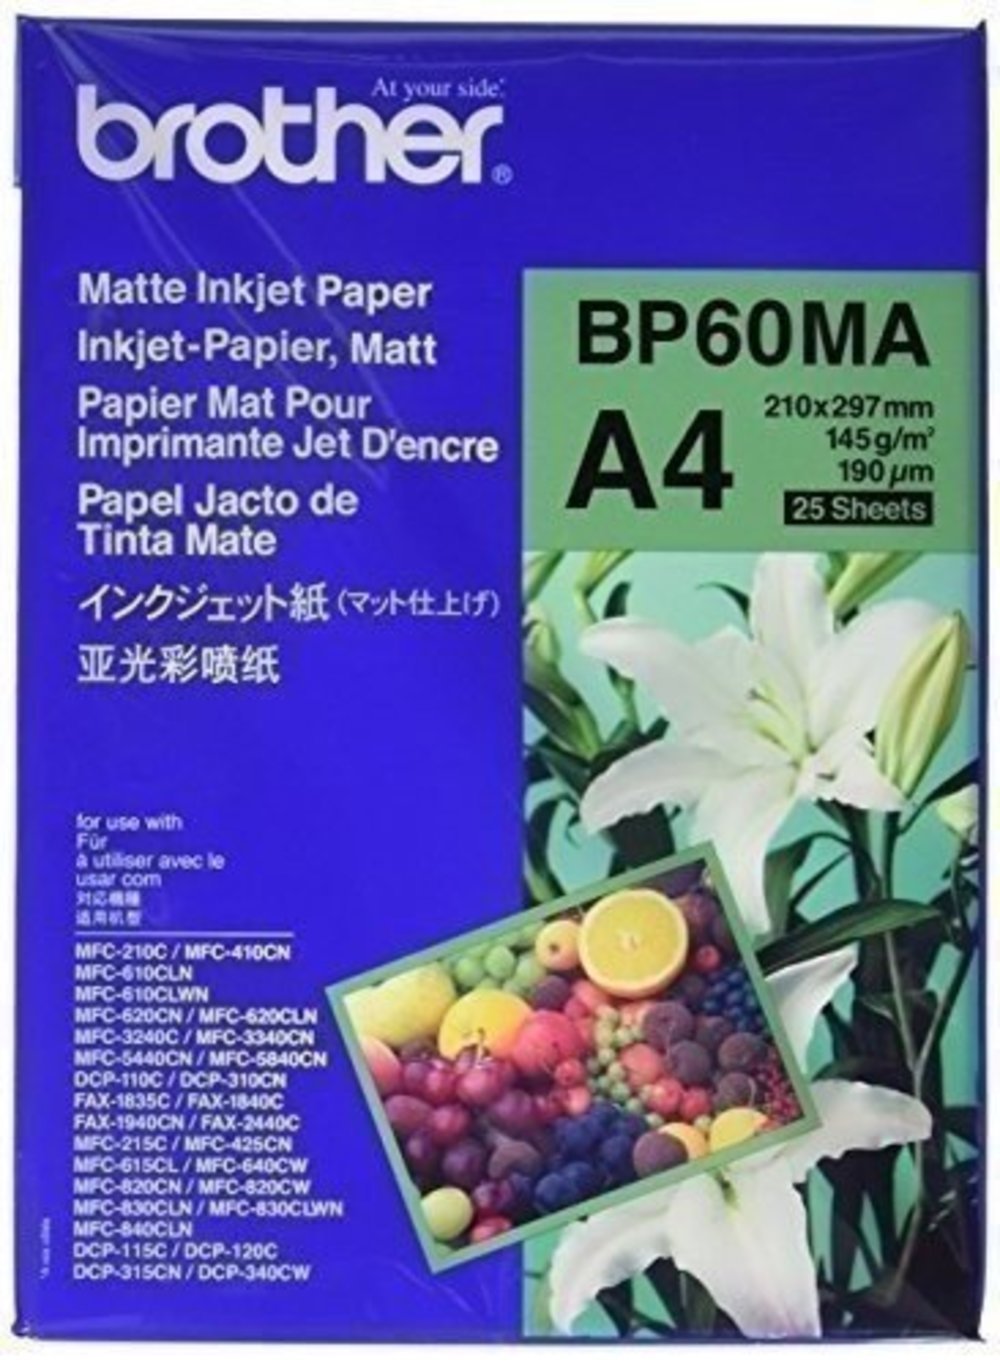 BROTHER BP60MA Inkjetpapier A4 matt Paket mit 25 Blatt 145 g/m